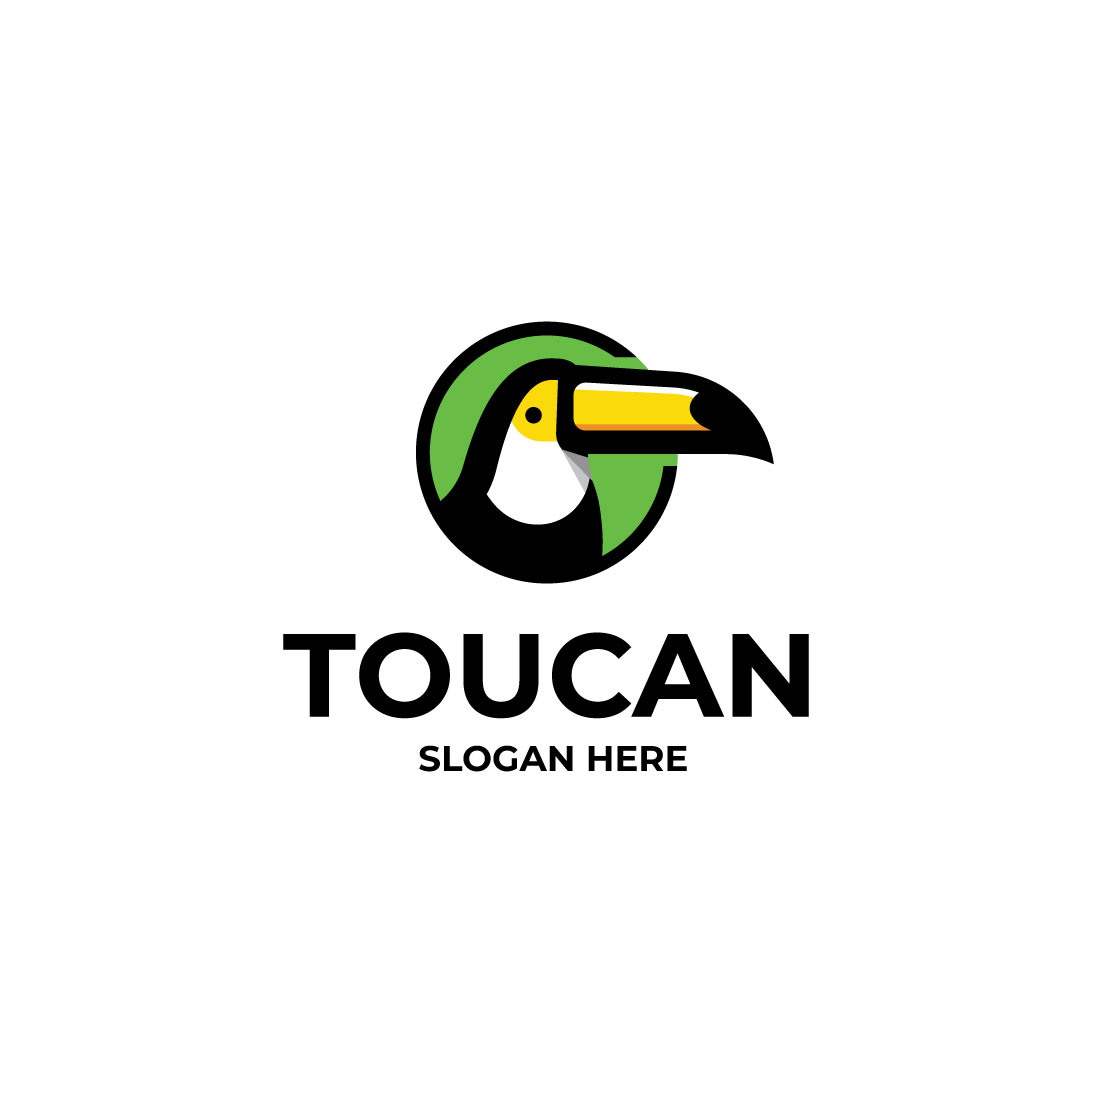 Toucan Logo preview image.